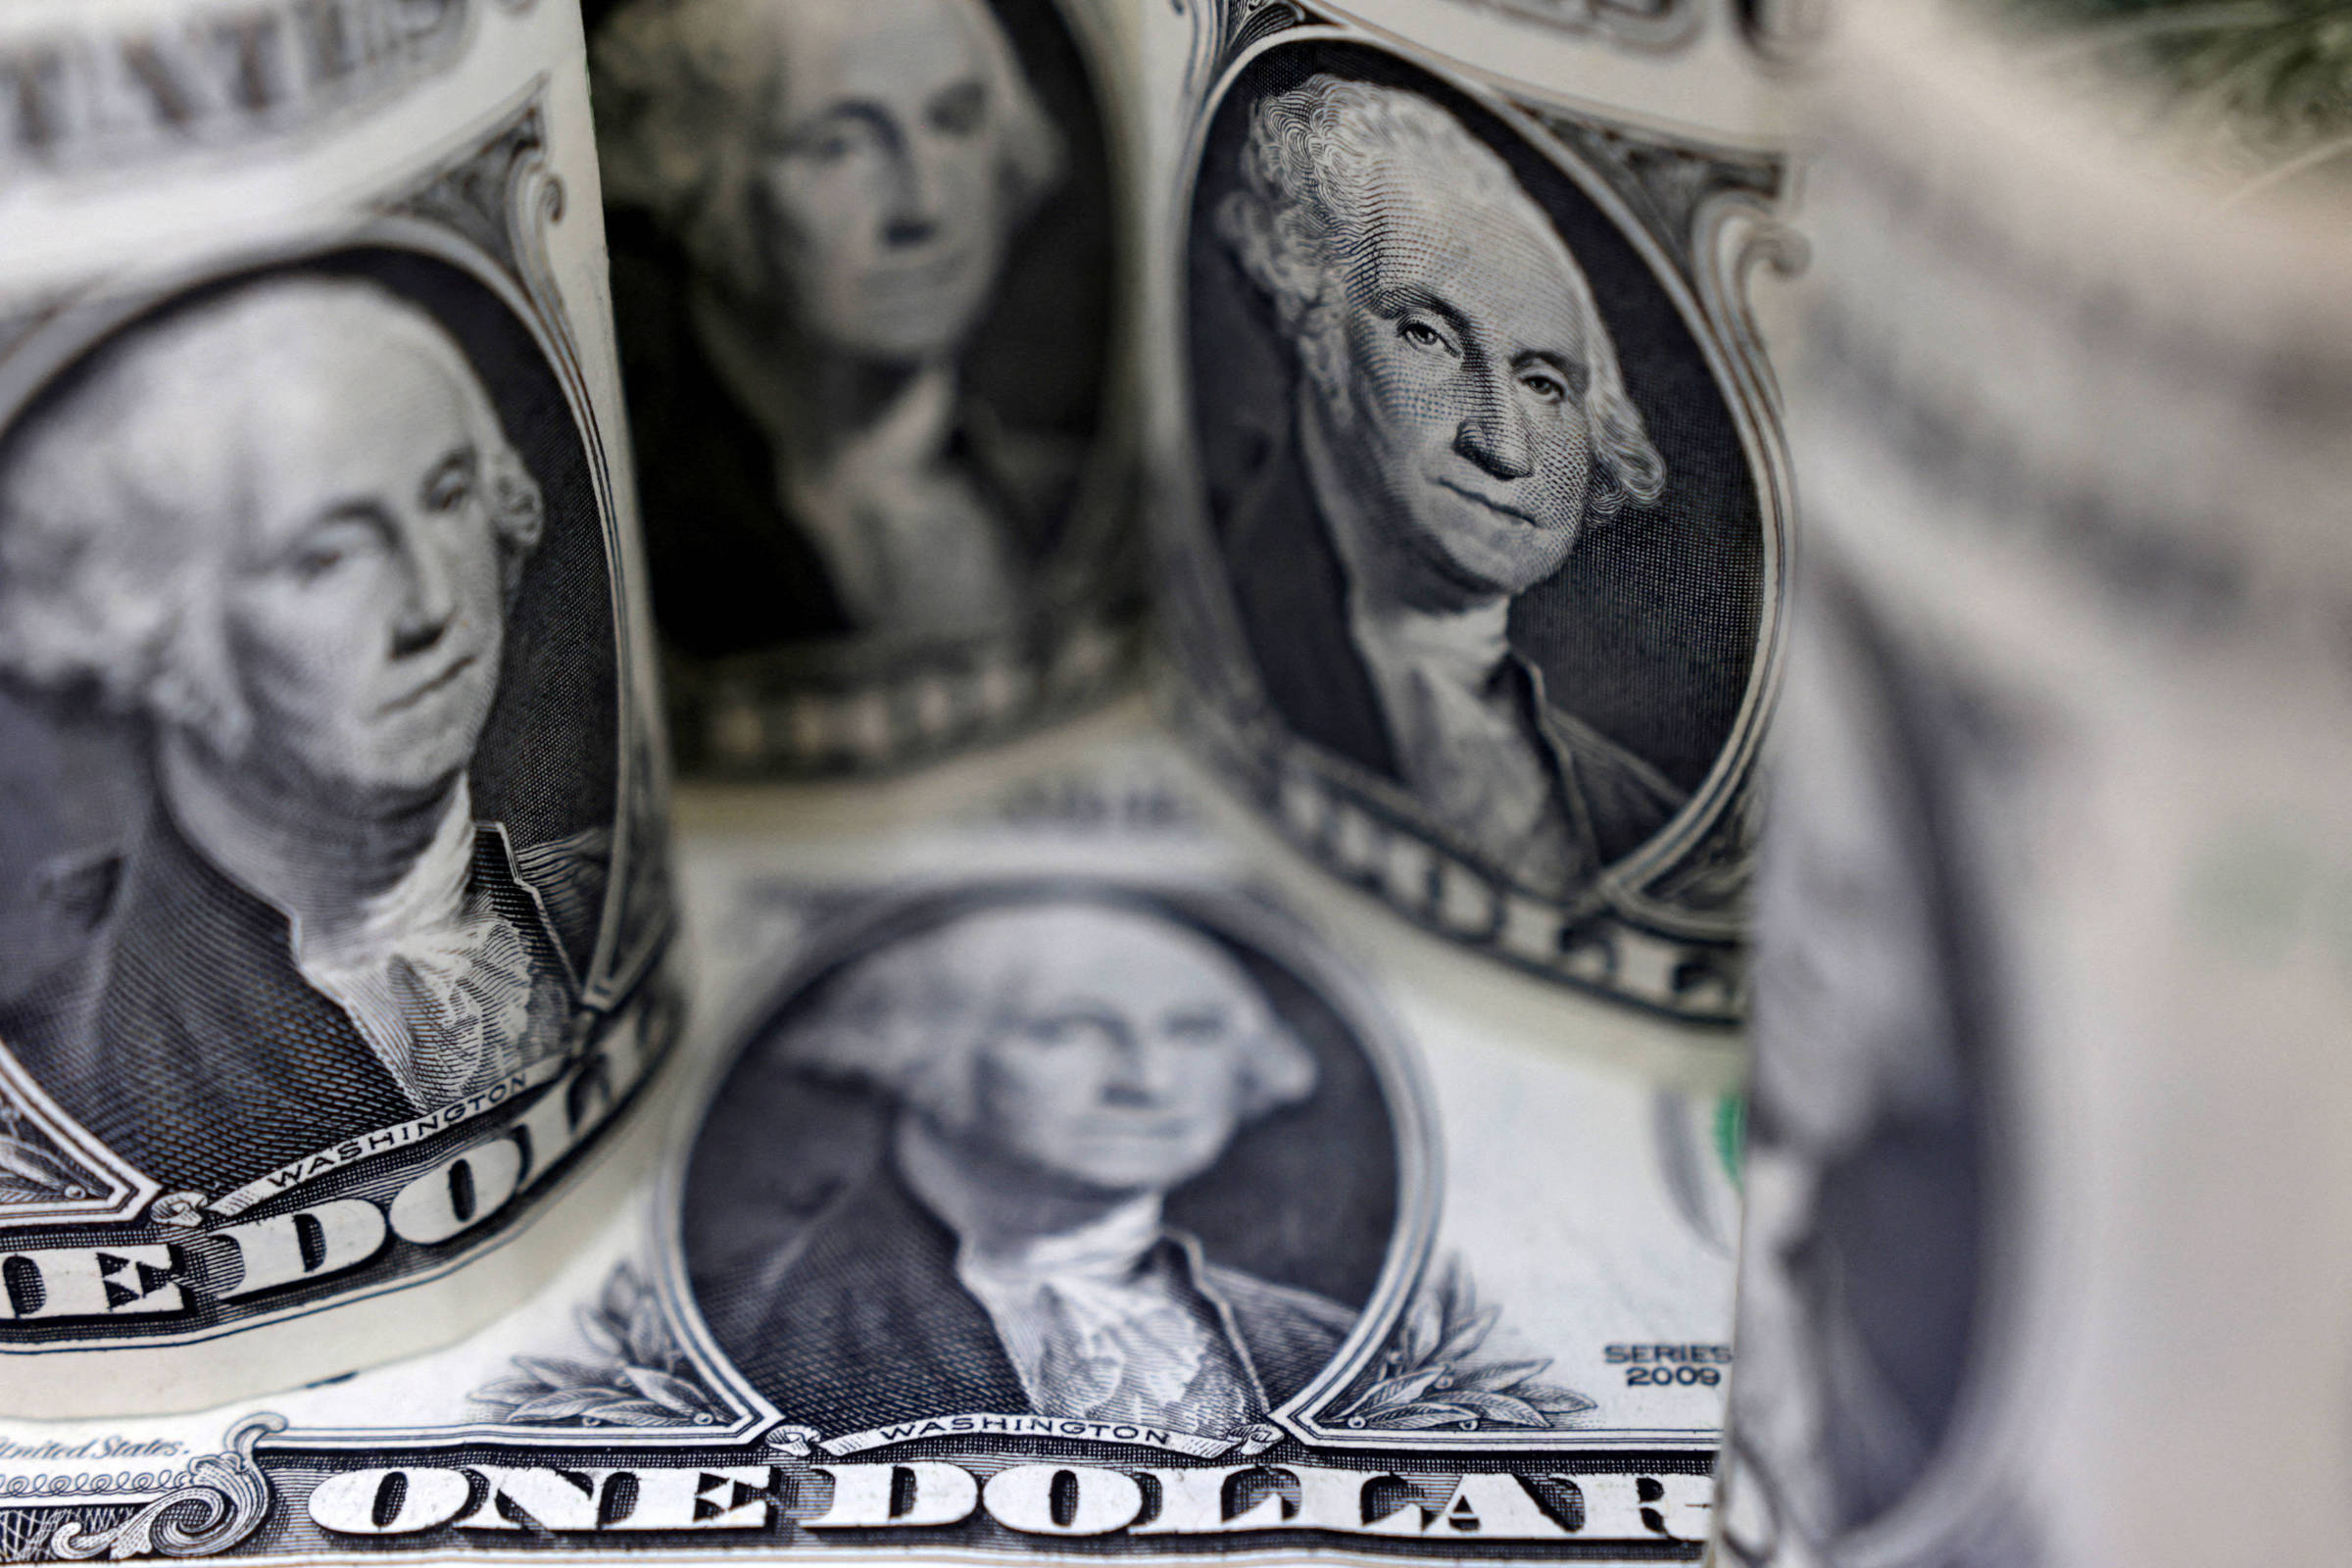 Notas de Dólar Americano: Conheça as diferenças - Blog Grupo Executive